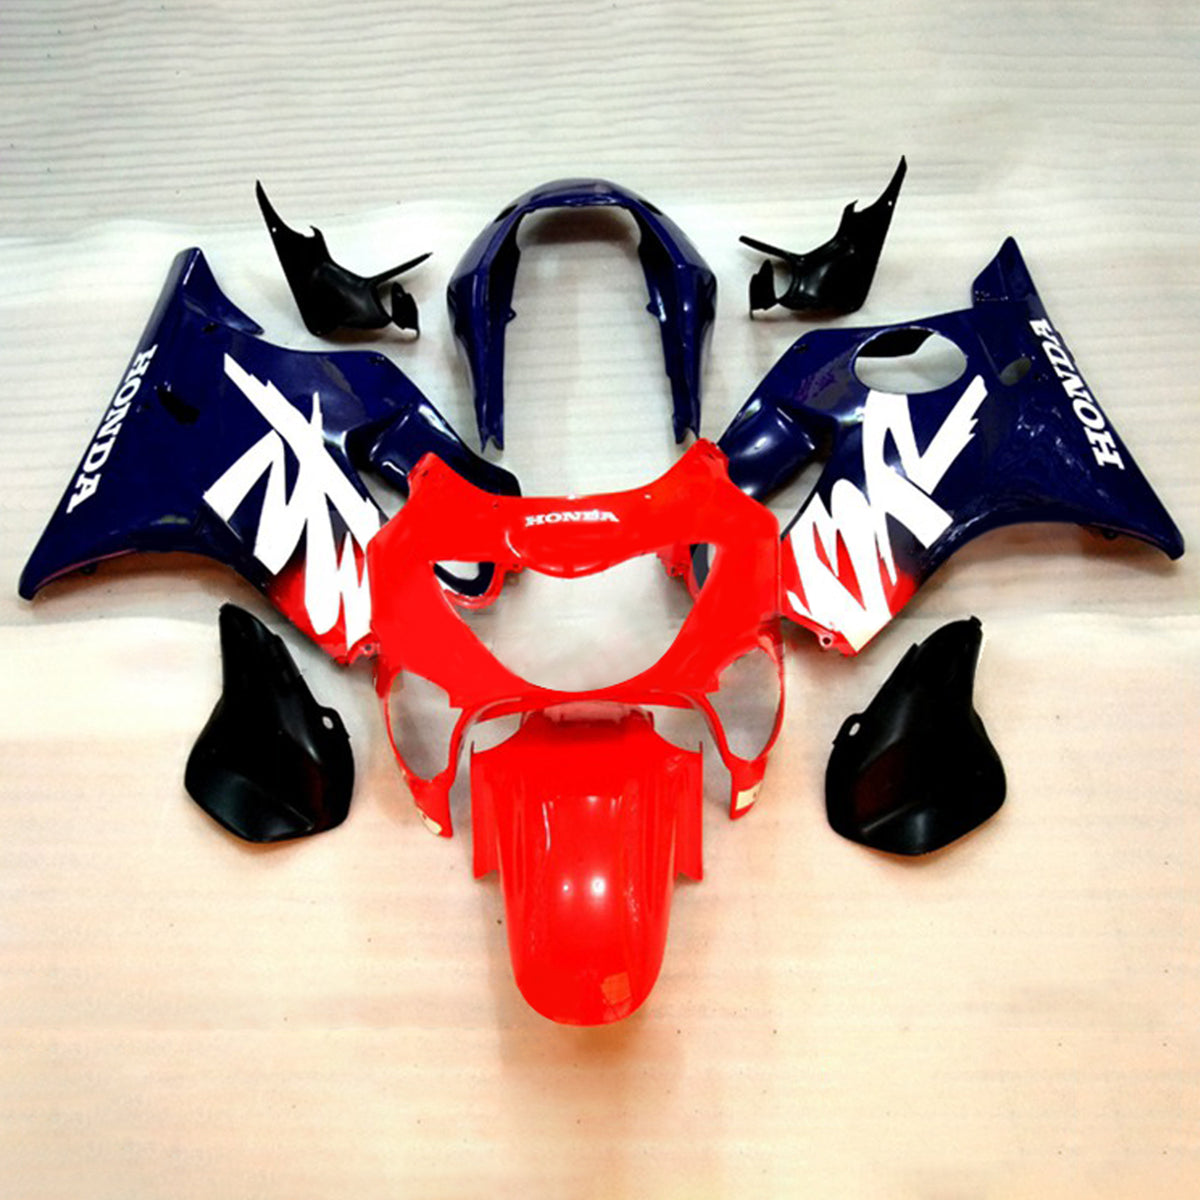 Amotopart 1999-2000 CBR600 F4 Honda Red&Blue Style1 Fairing Kit